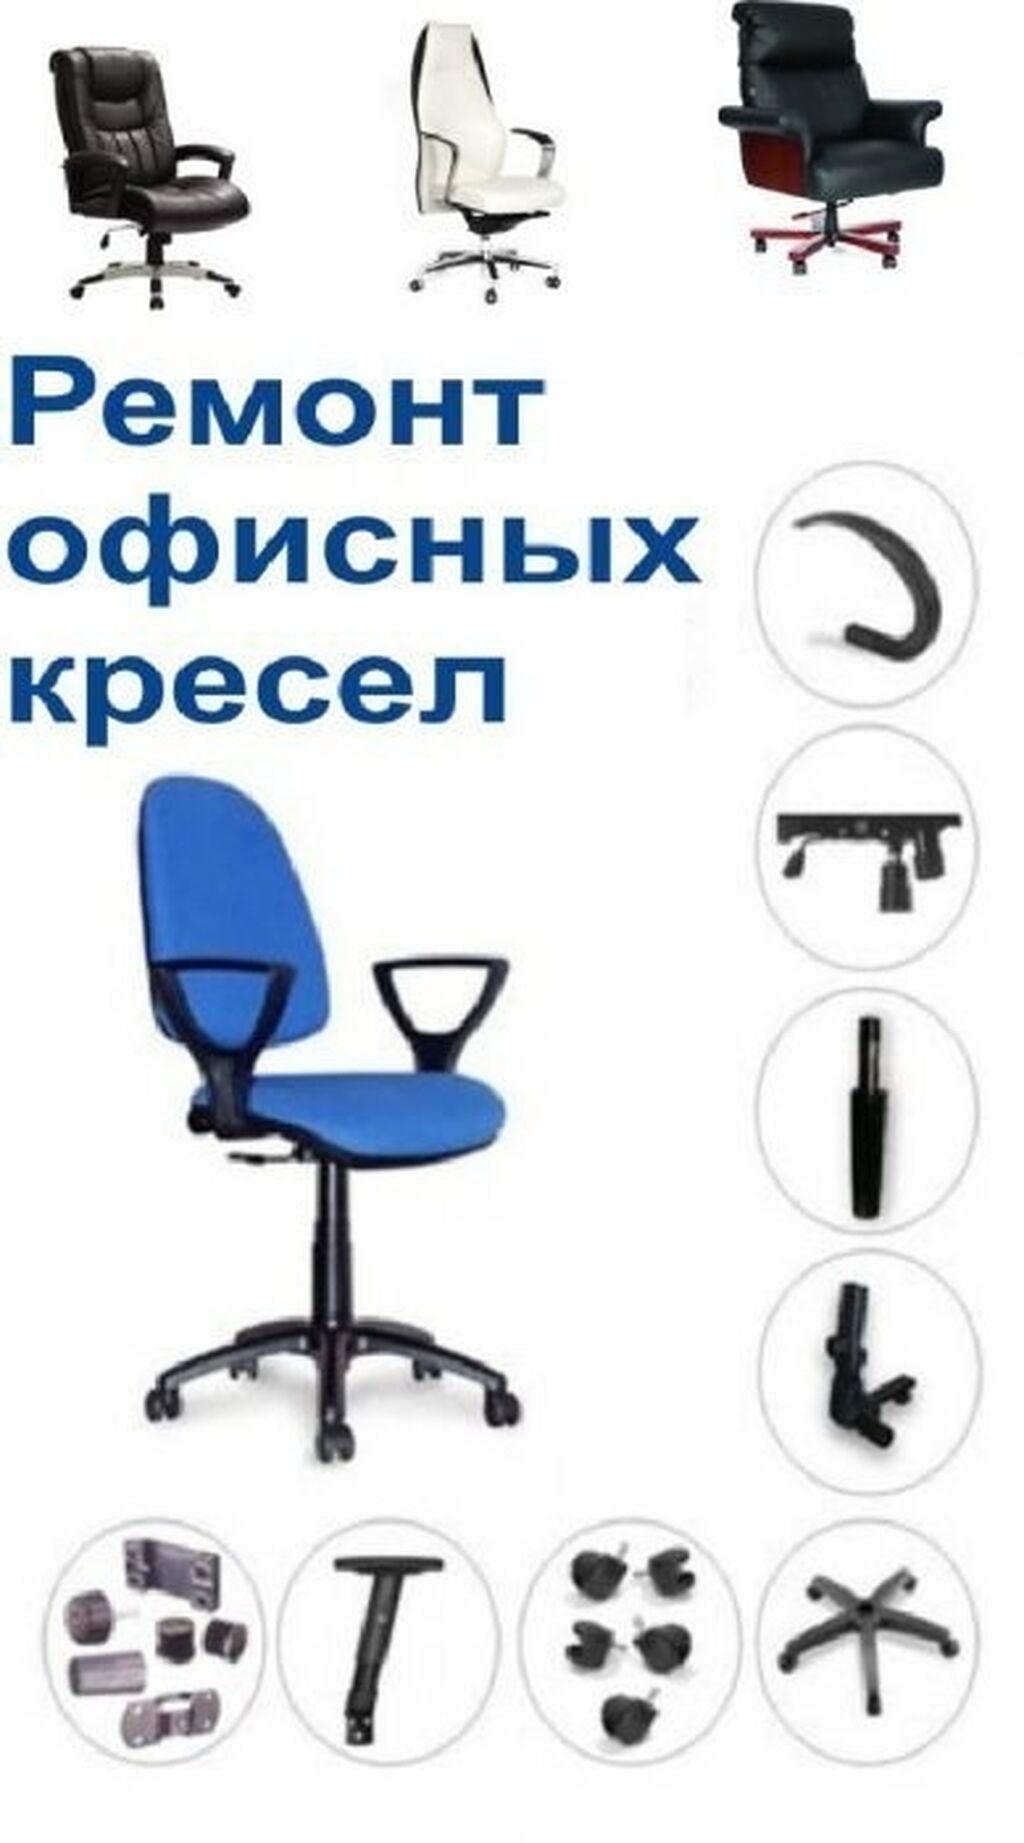 офисные кресла запчасти украина